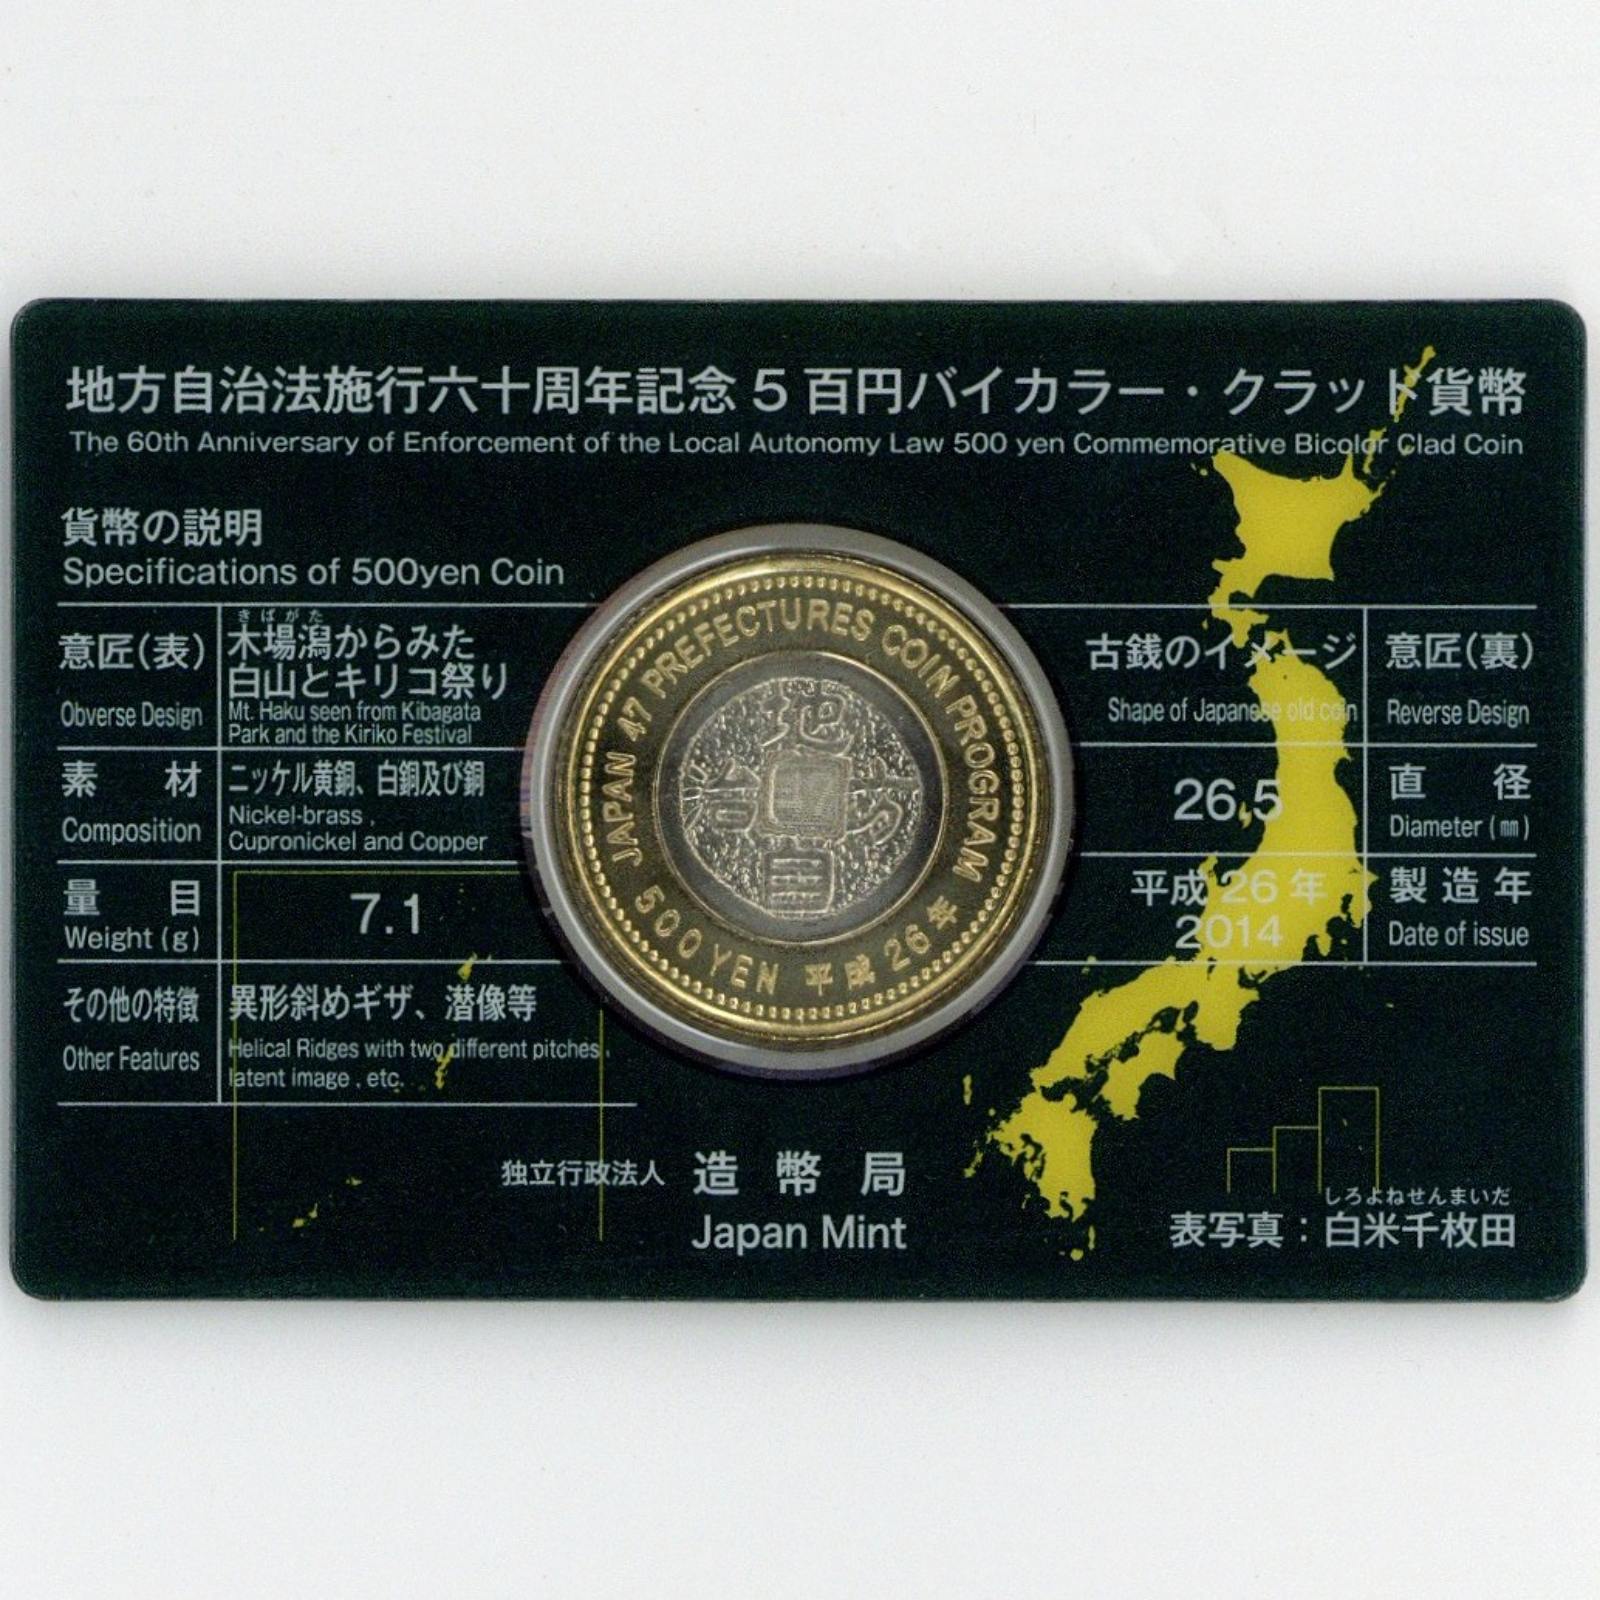 地方自治 60周年記念500円バイカラー・クラッド貨幣カード 石川県 